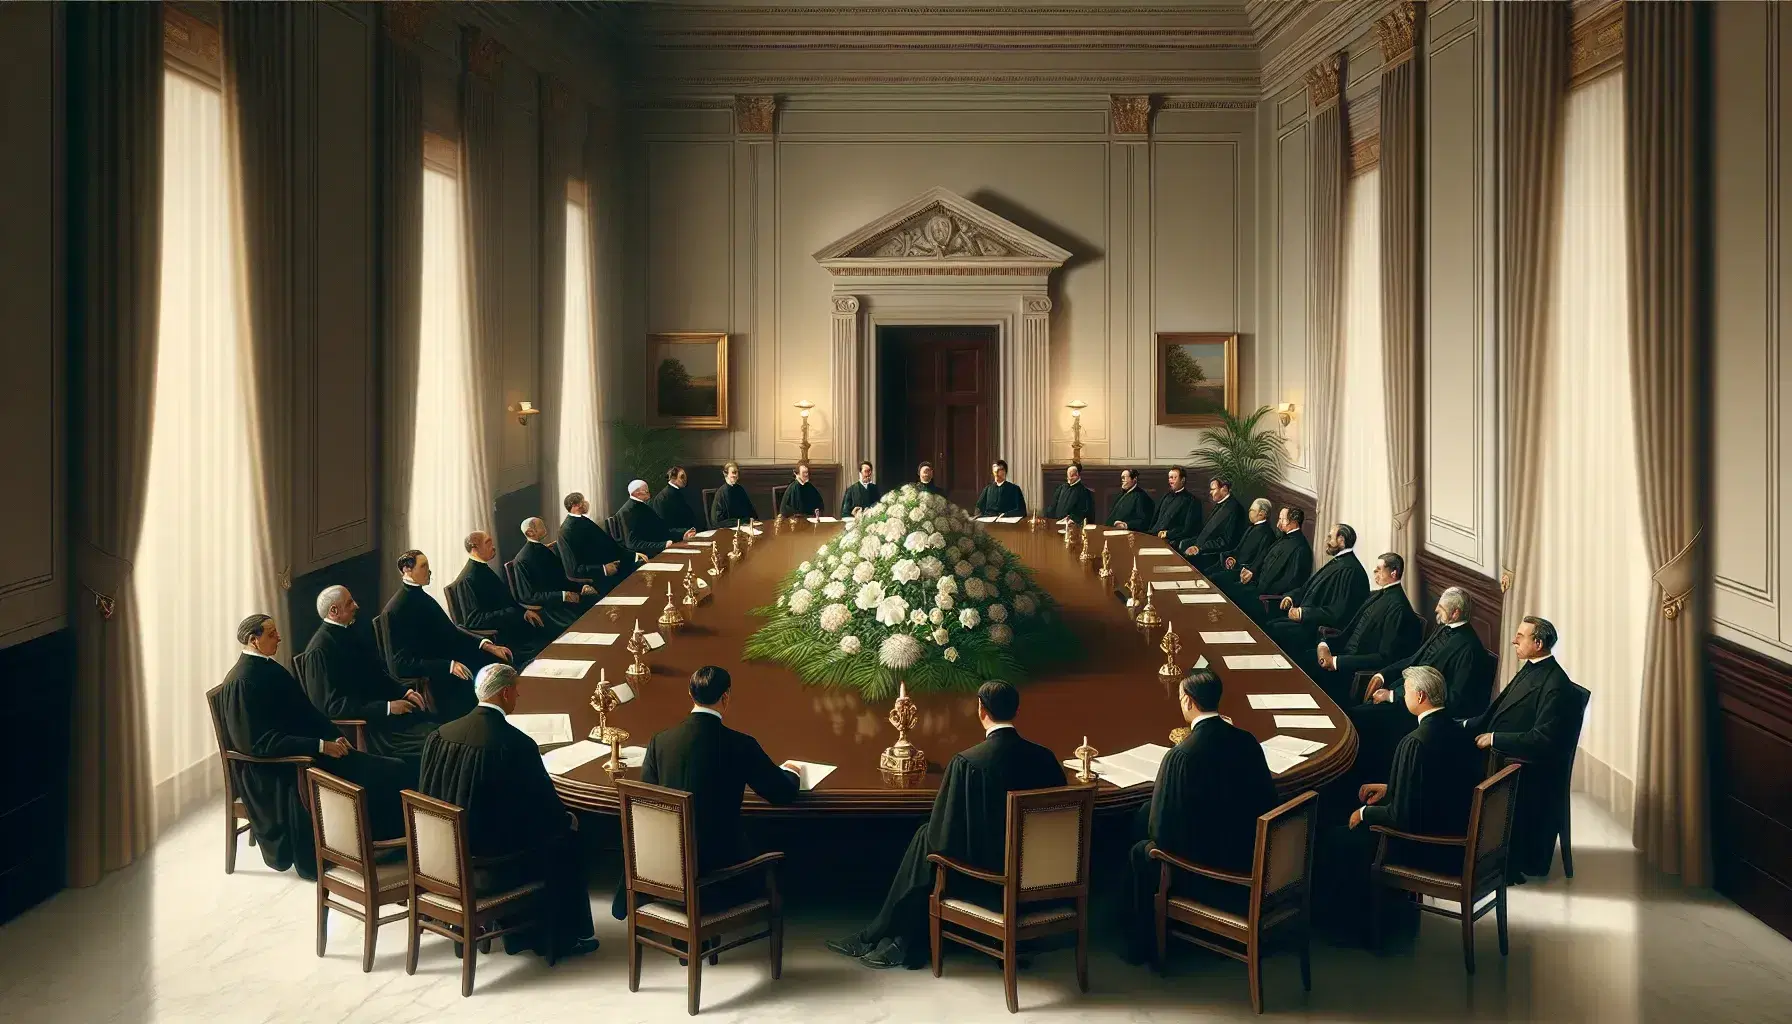 Grupo de personas en reunión formal alrededor de una mesa ovalada de madera oscura con arreglo floral central en una sala iluminada con luz suave y paredes crema.